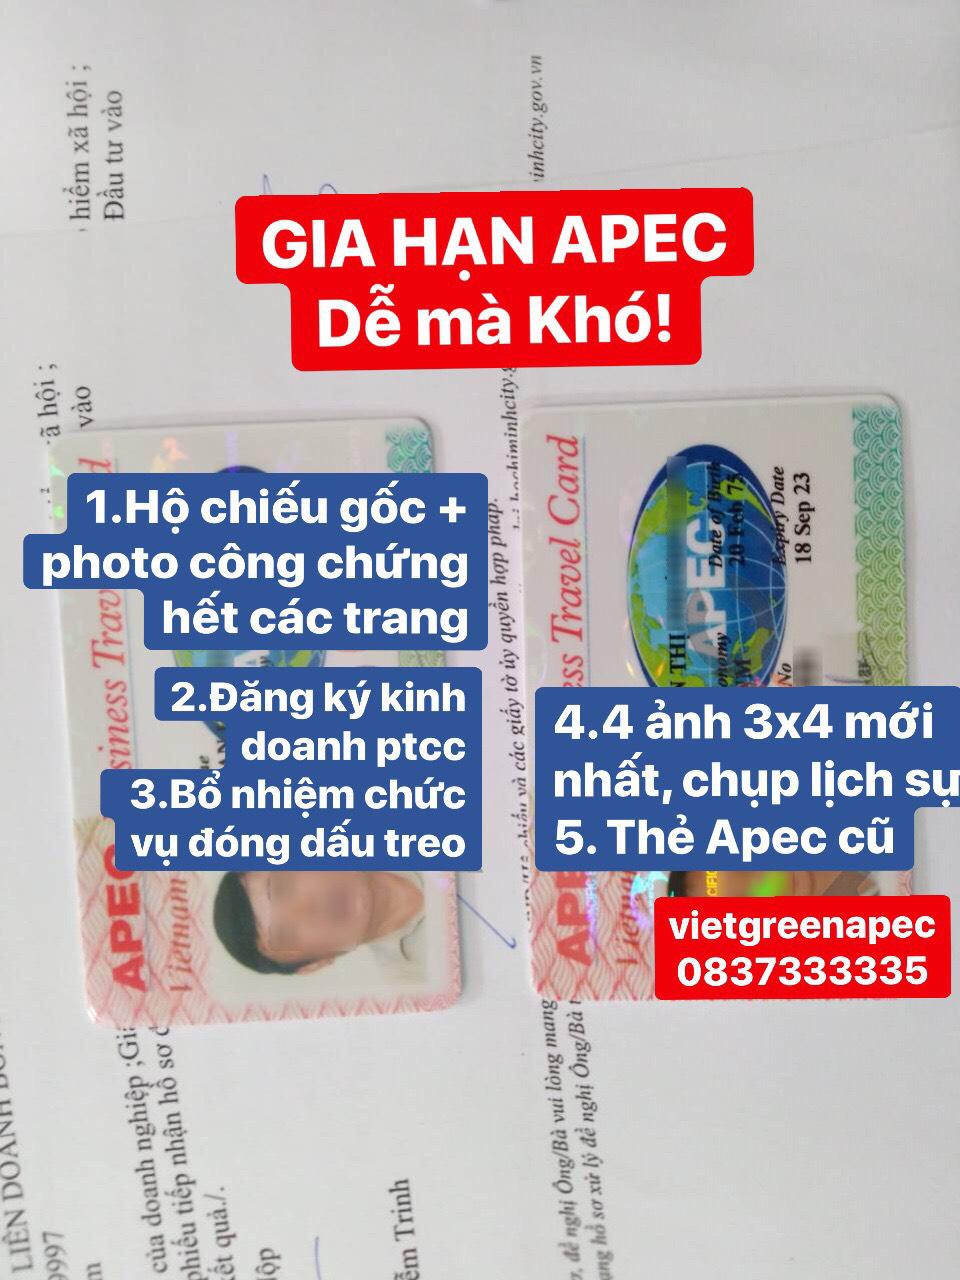 Thành phần hồ sơ làm thẻ APEC năm 2021 mới nhất